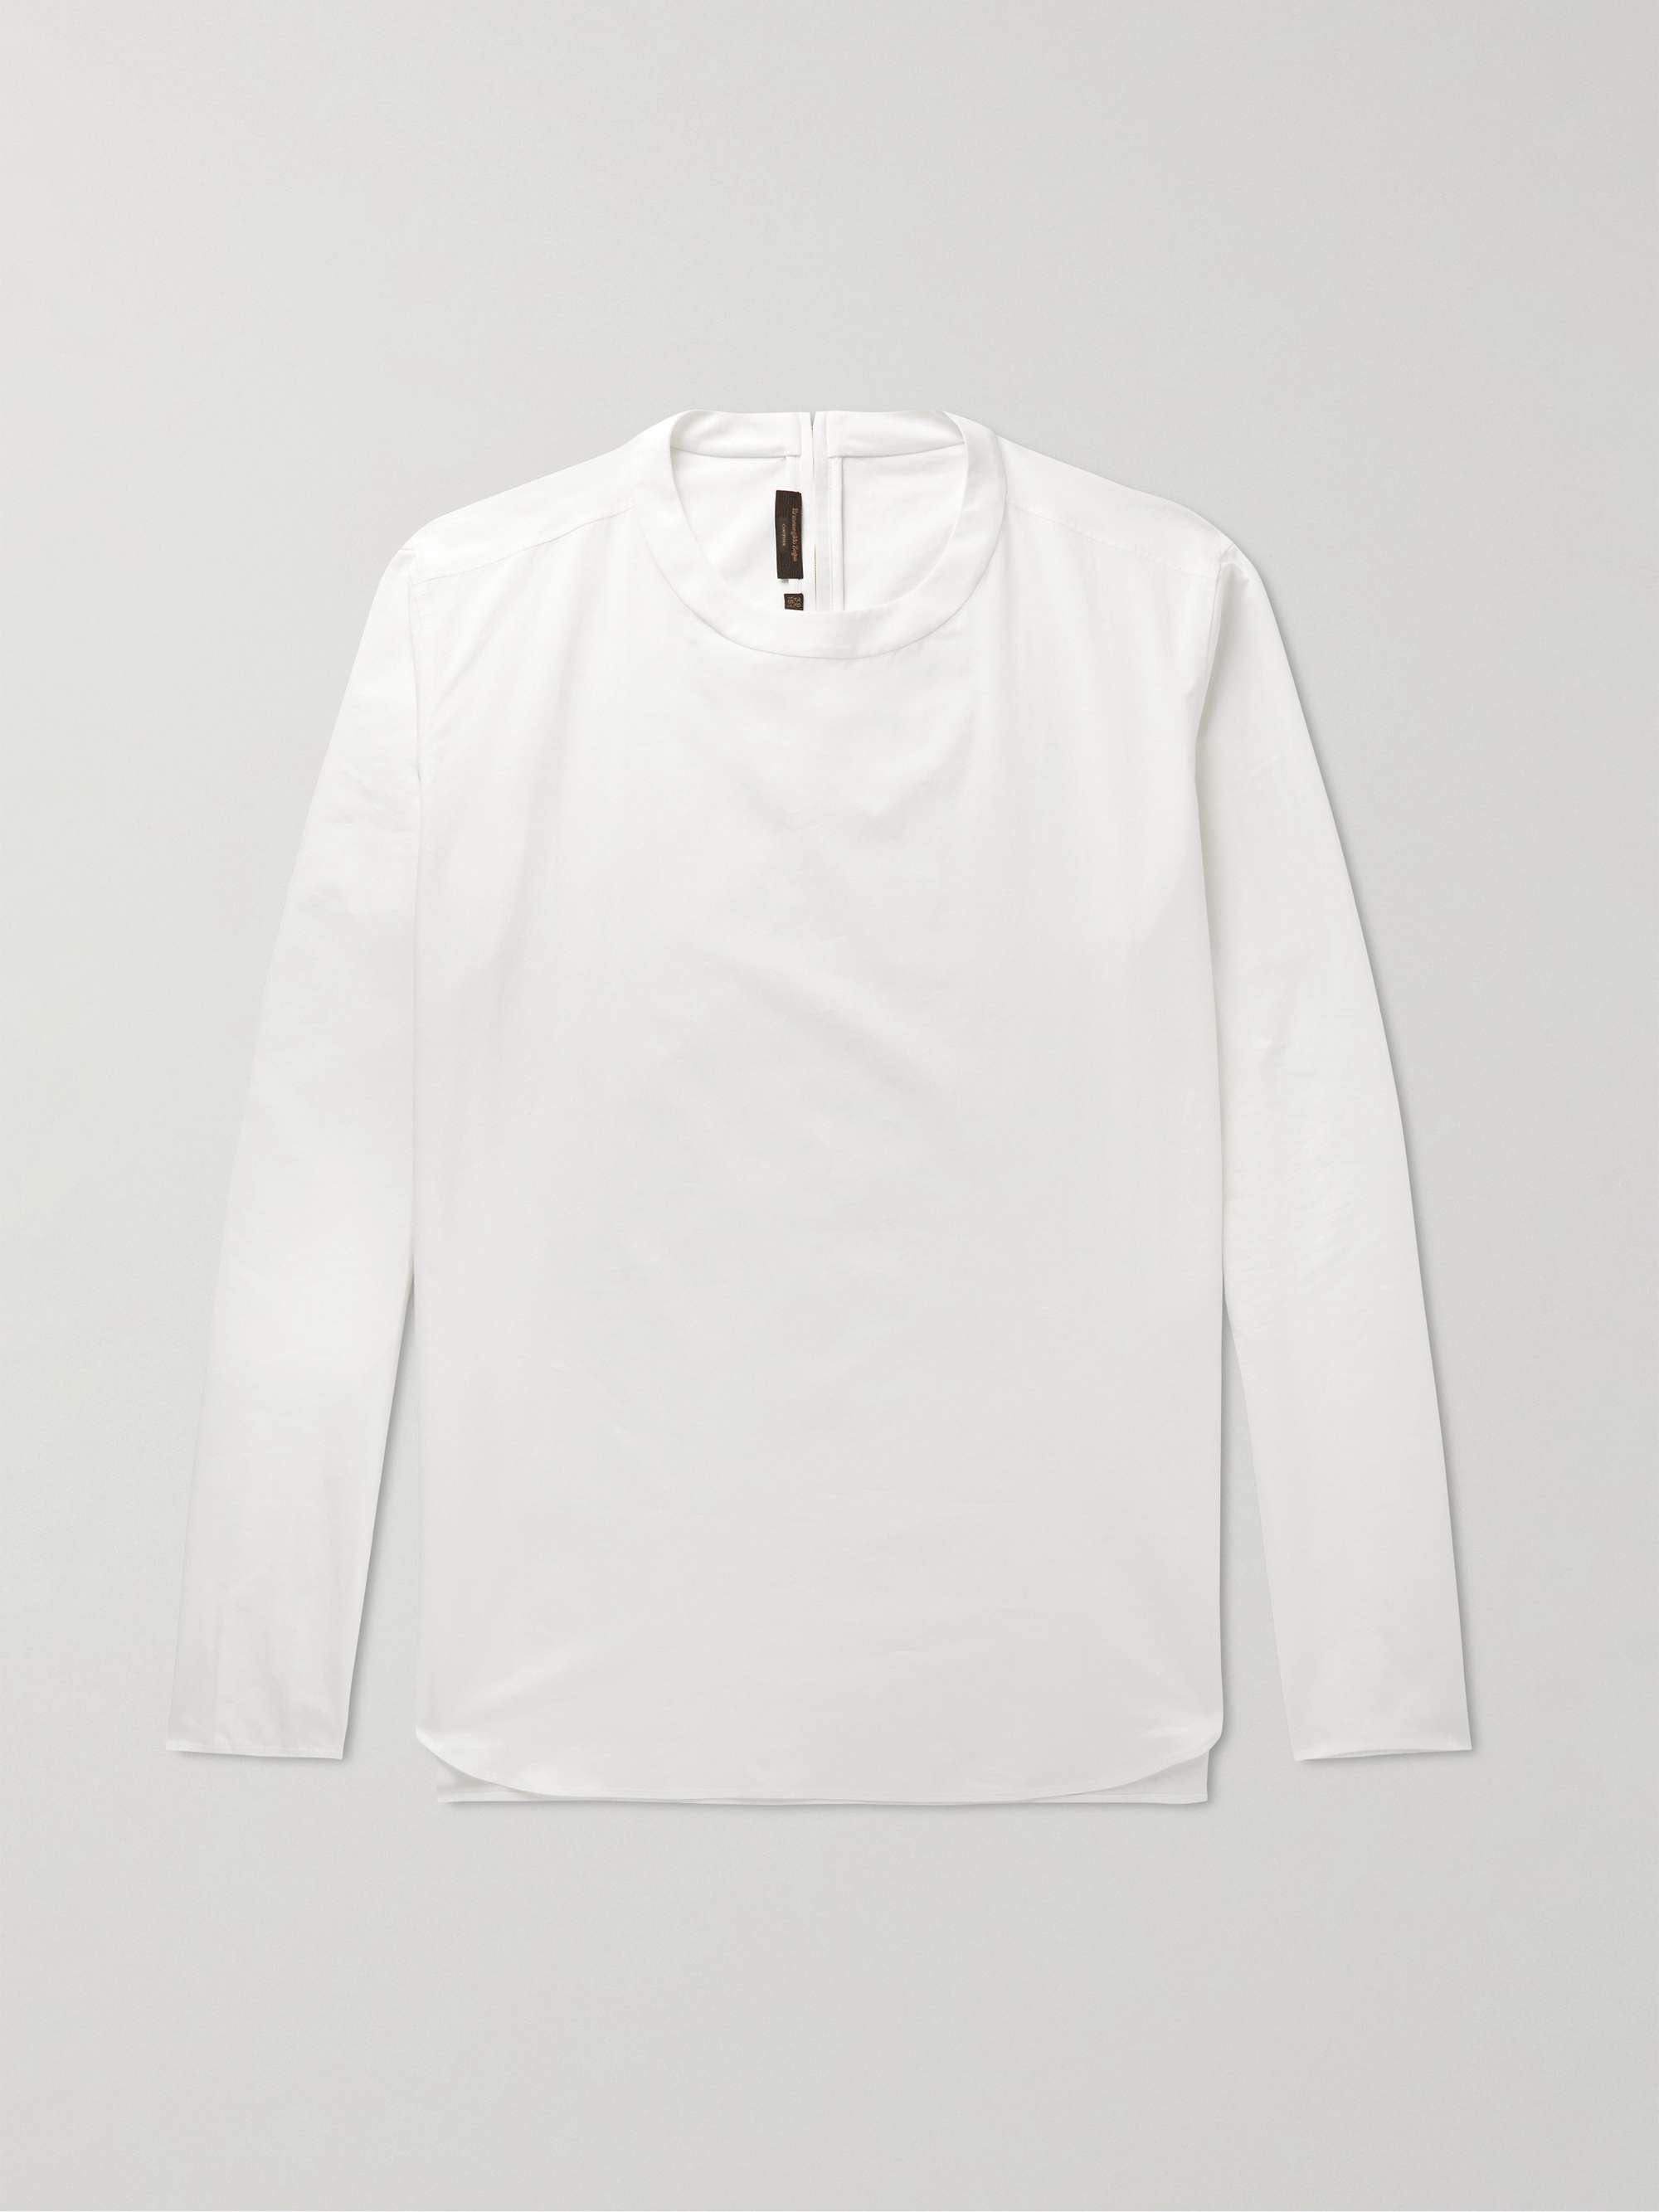 ZEGNA Cotton and Silk-Blend Shirt